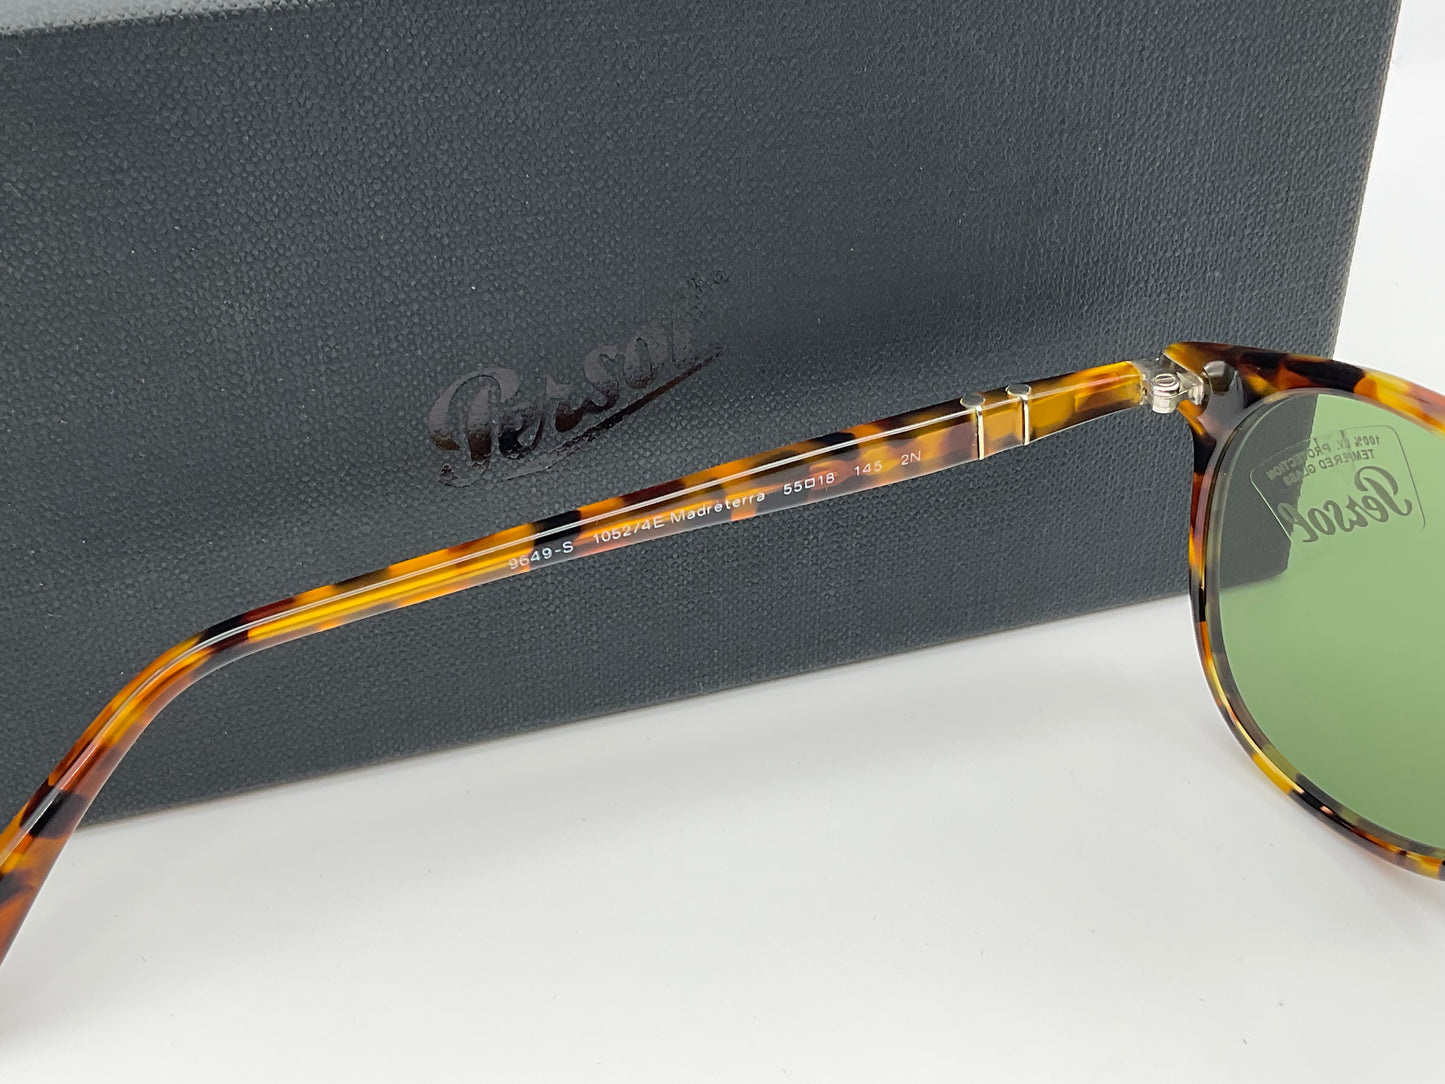 PERSOL PO9649s 55mm Medreterra Tortoise Crystal Green Sunglasses 10524E New